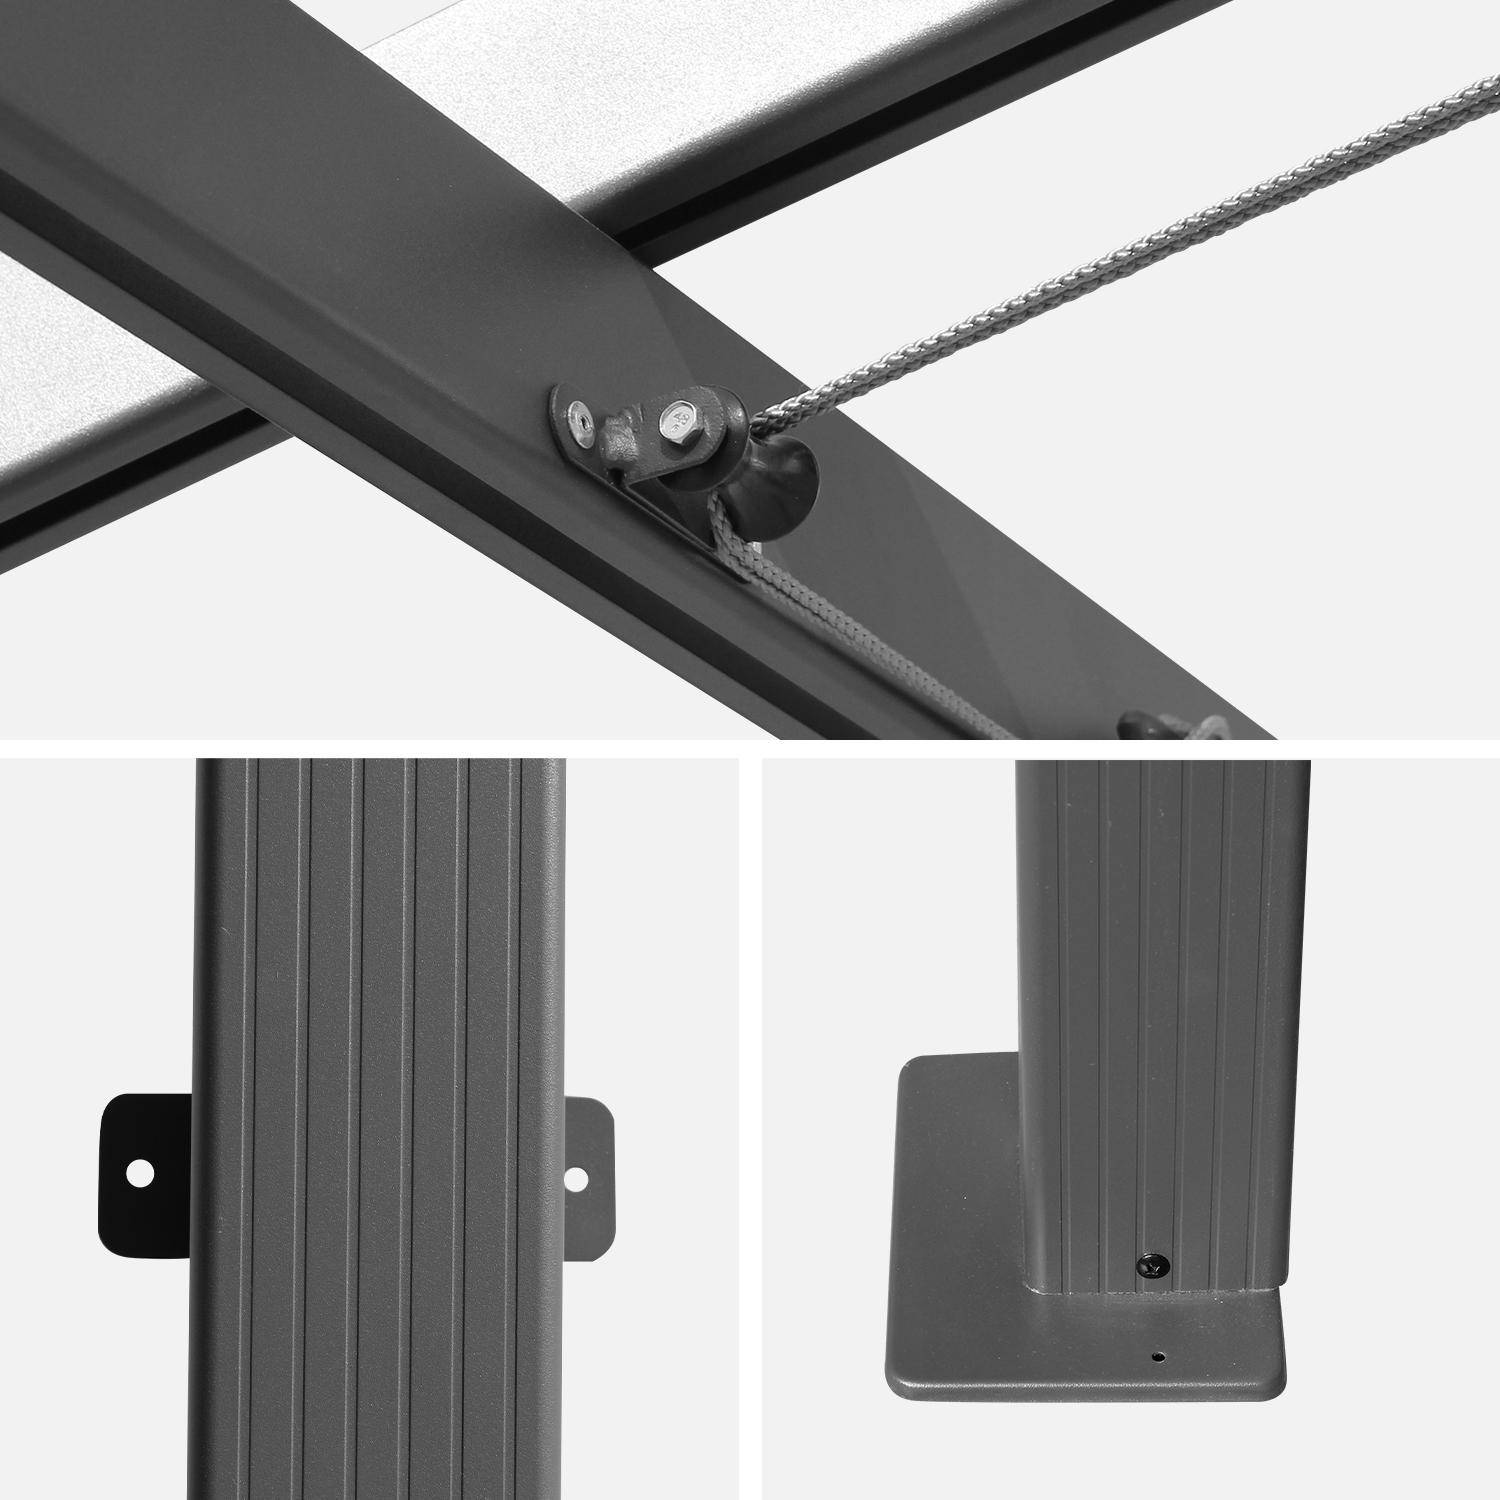 3x4m wall-mounted pergola in aluminium - Sliding retractable canopy, aluminium frame - Murum - Grey,sweeek,Photo4